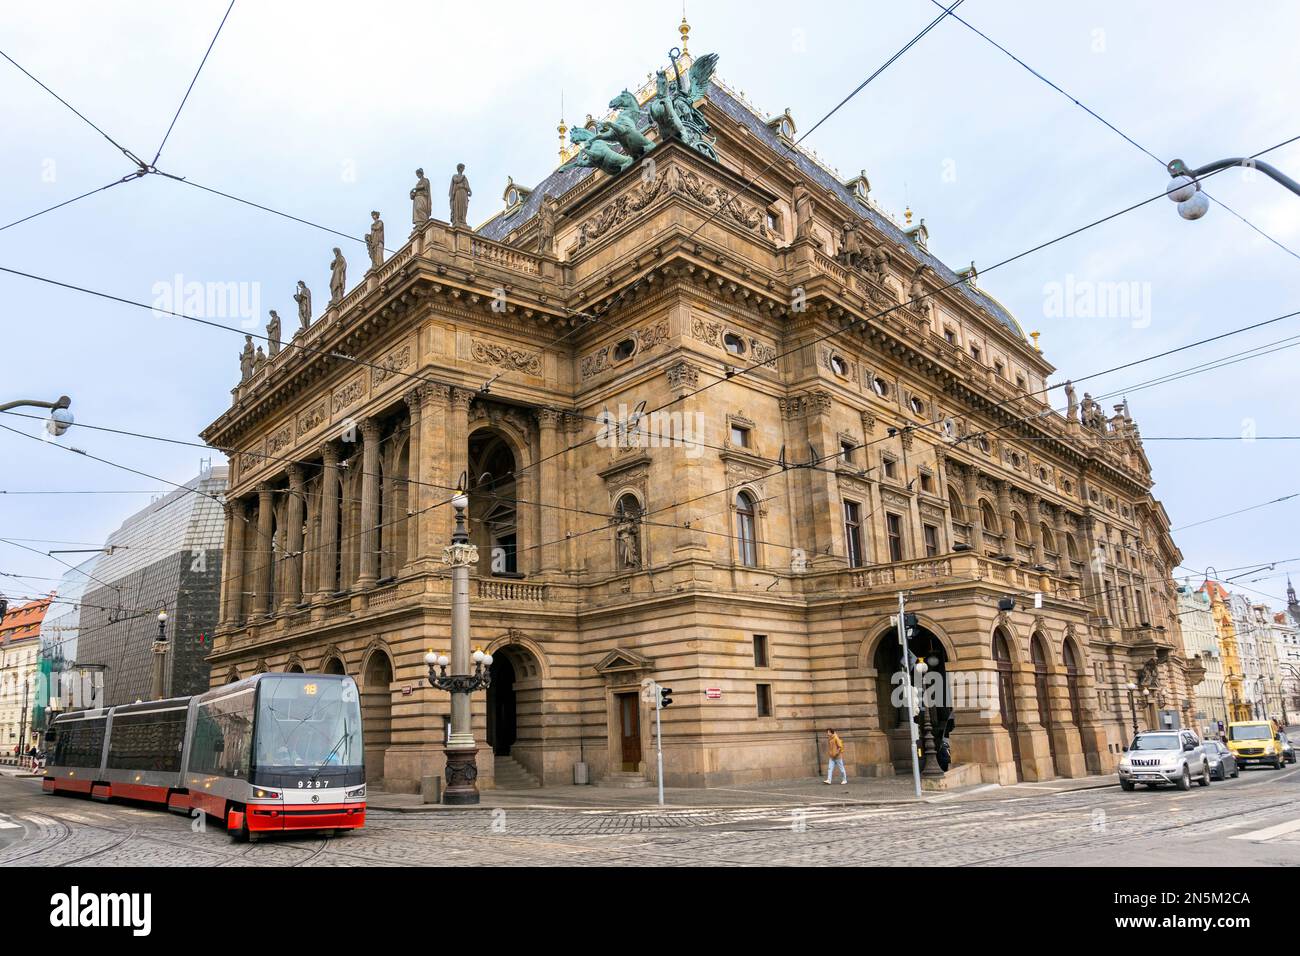 Dettaglio architettonico in un edificio storico nel centro di Praga, Praga, ceco, questo è Narodni Divadio, il teatro grande per balletto e opera Foto Stock